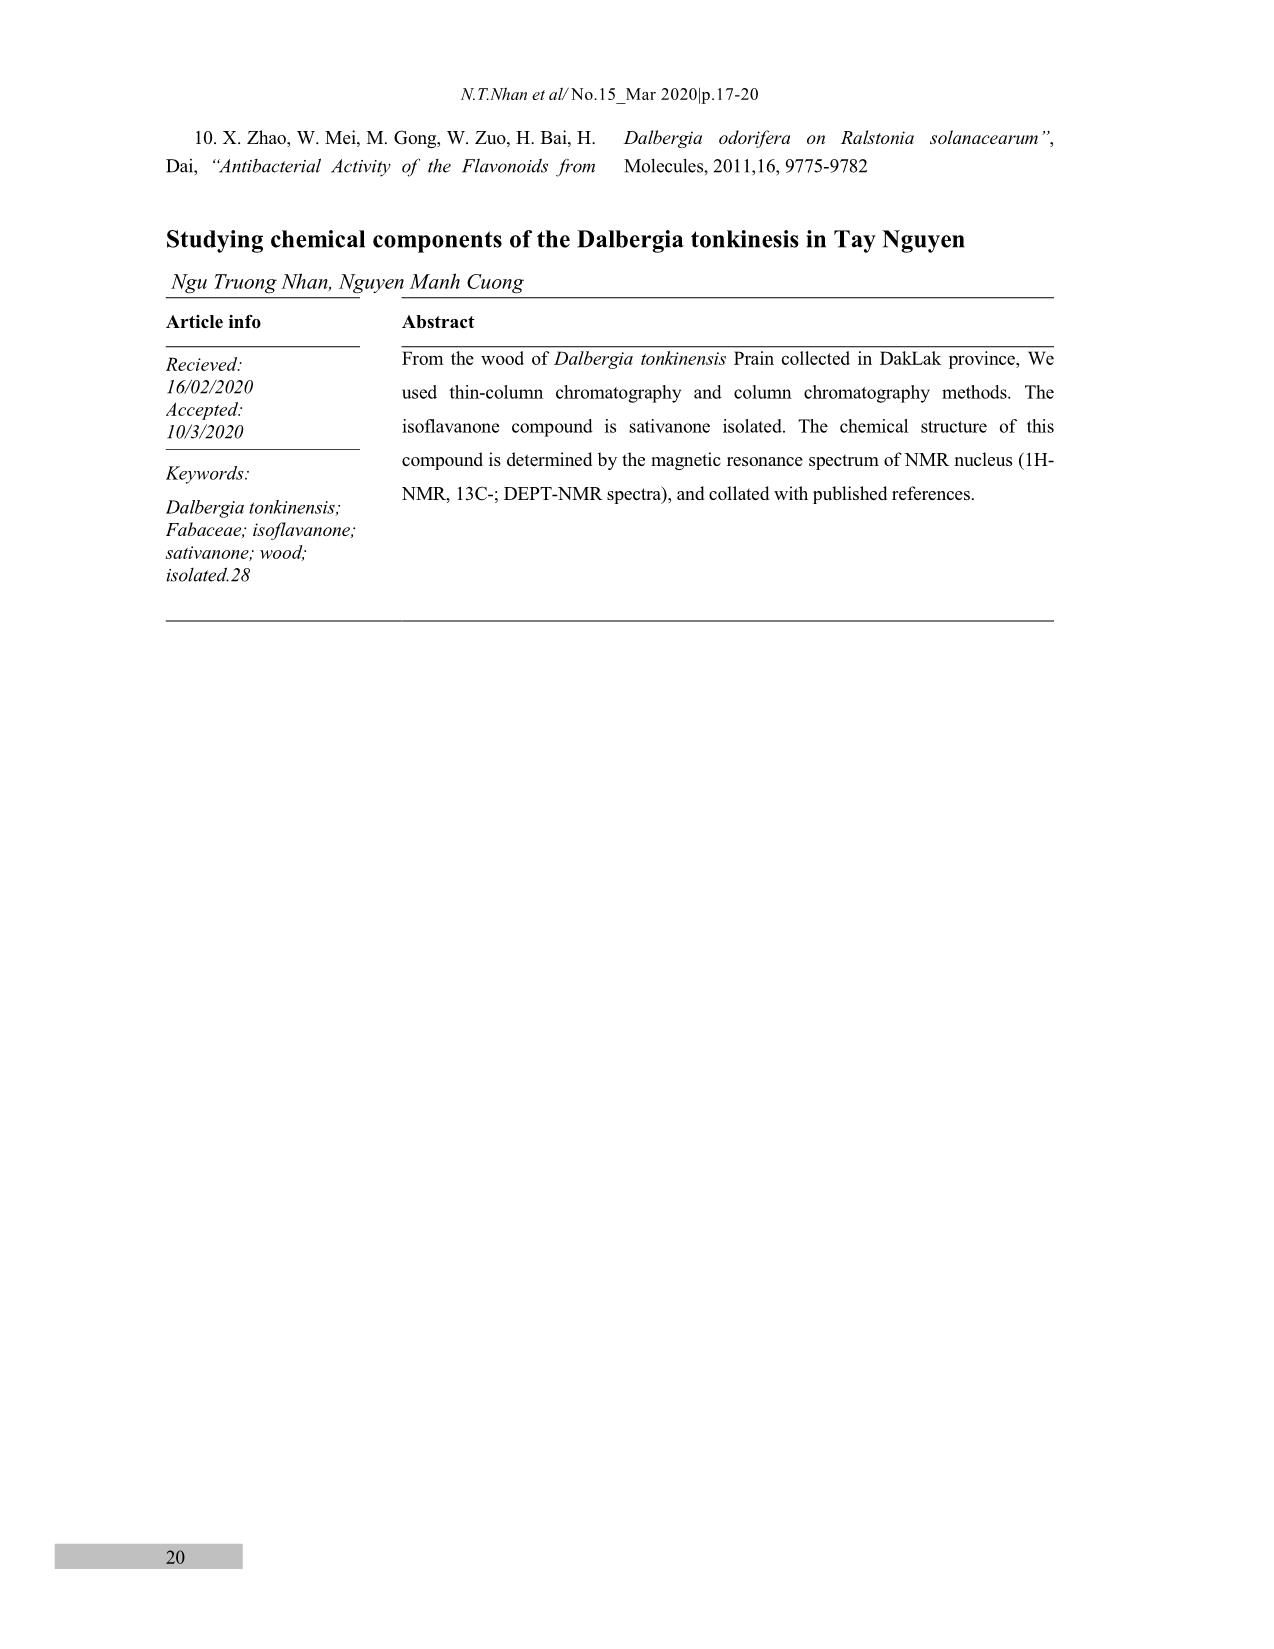 Góp phần nghiên cứu về thành phần hóa học của cây Sưa đỏ (dalbergia tonkinesis) ở Tây Nguyên trang 4